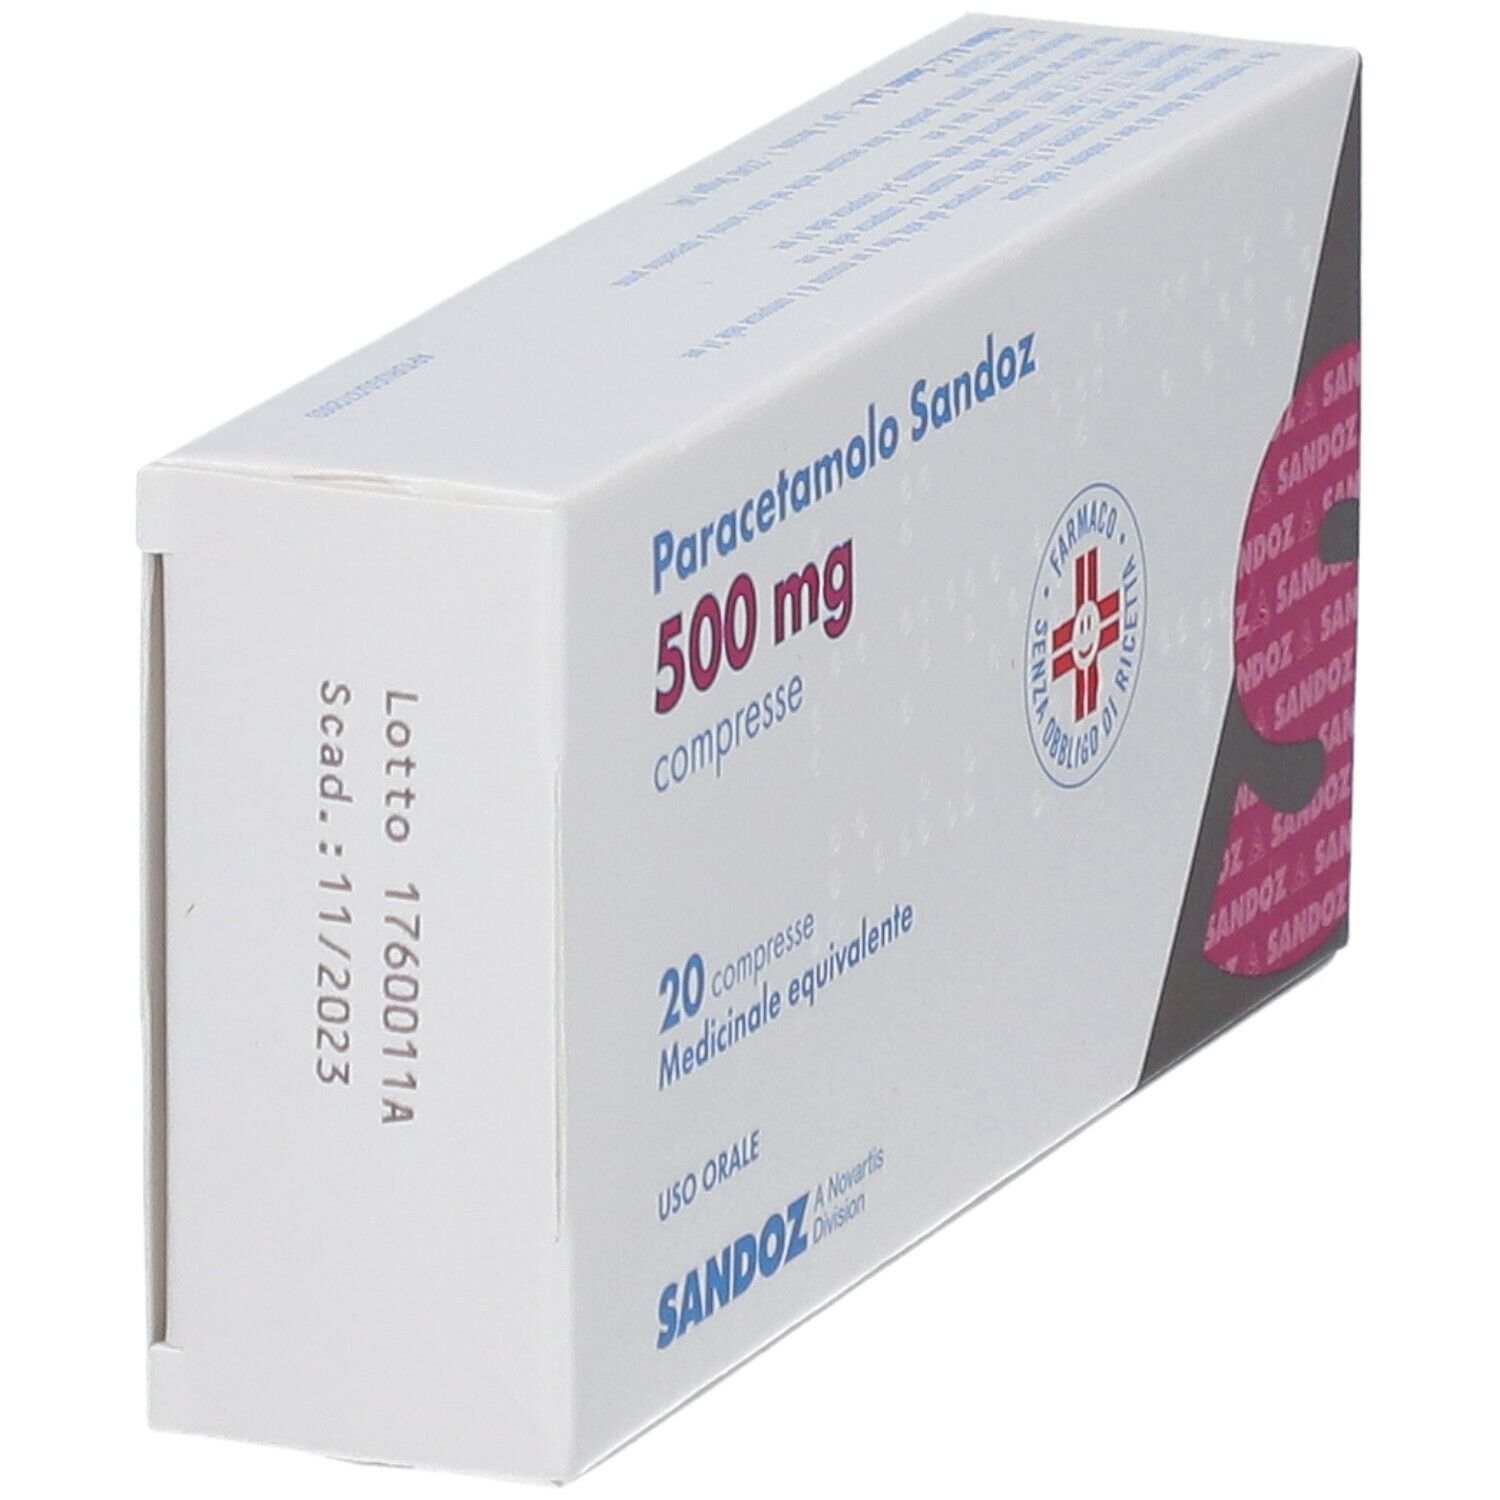 Paracetamolo Sandoz 500 mg Compresse